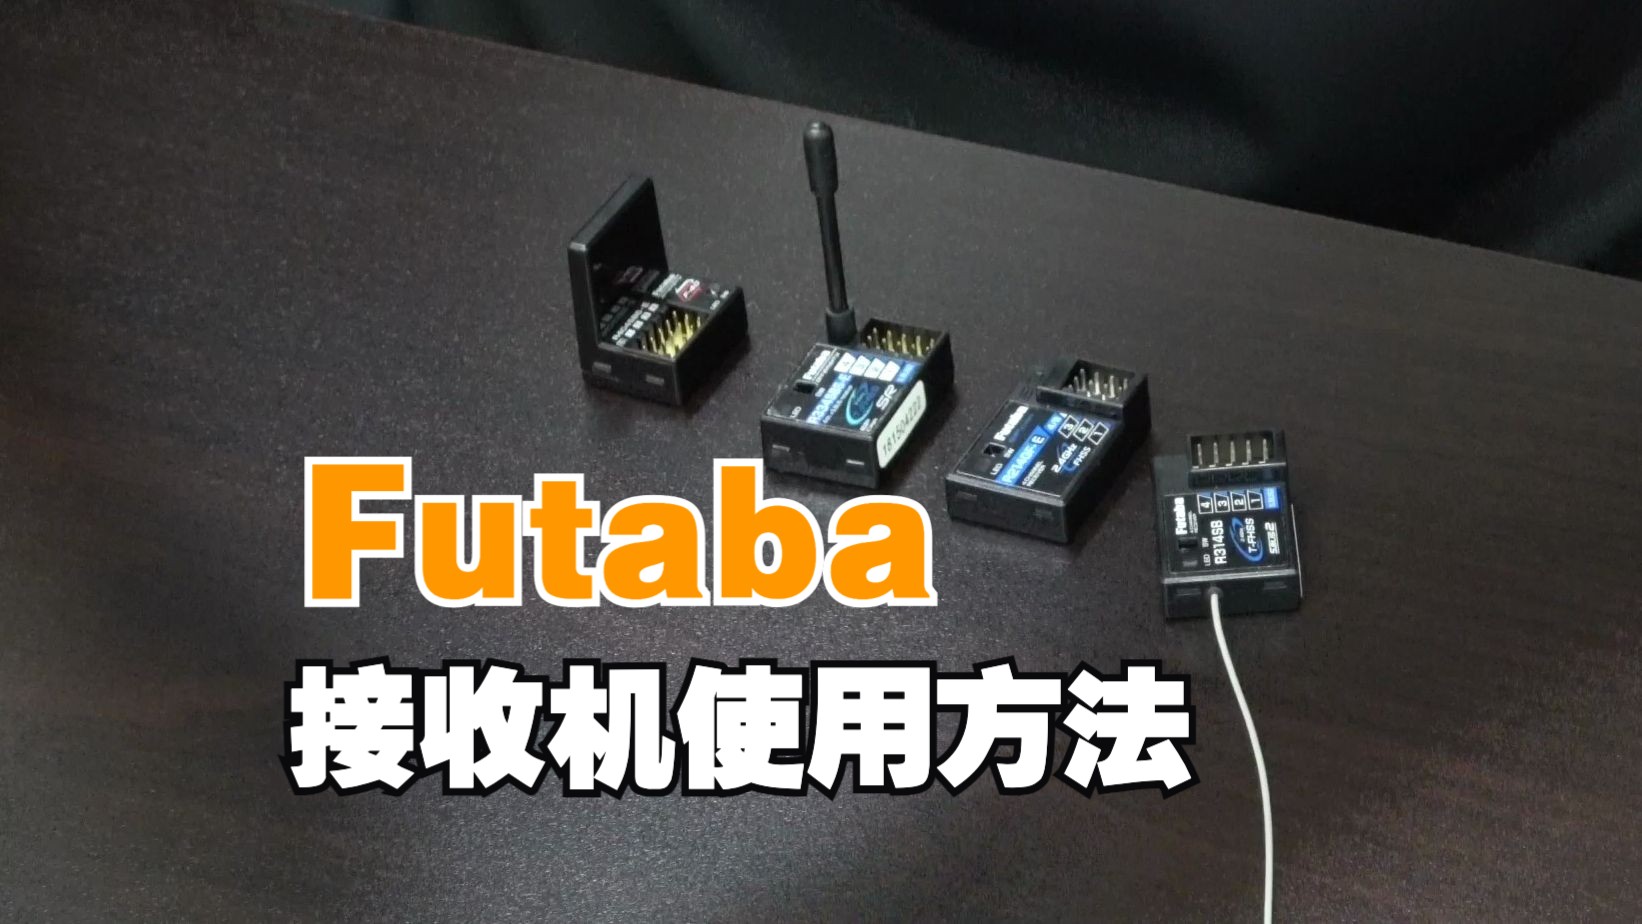 Futaba 车用接收机使用方法教学官方视频